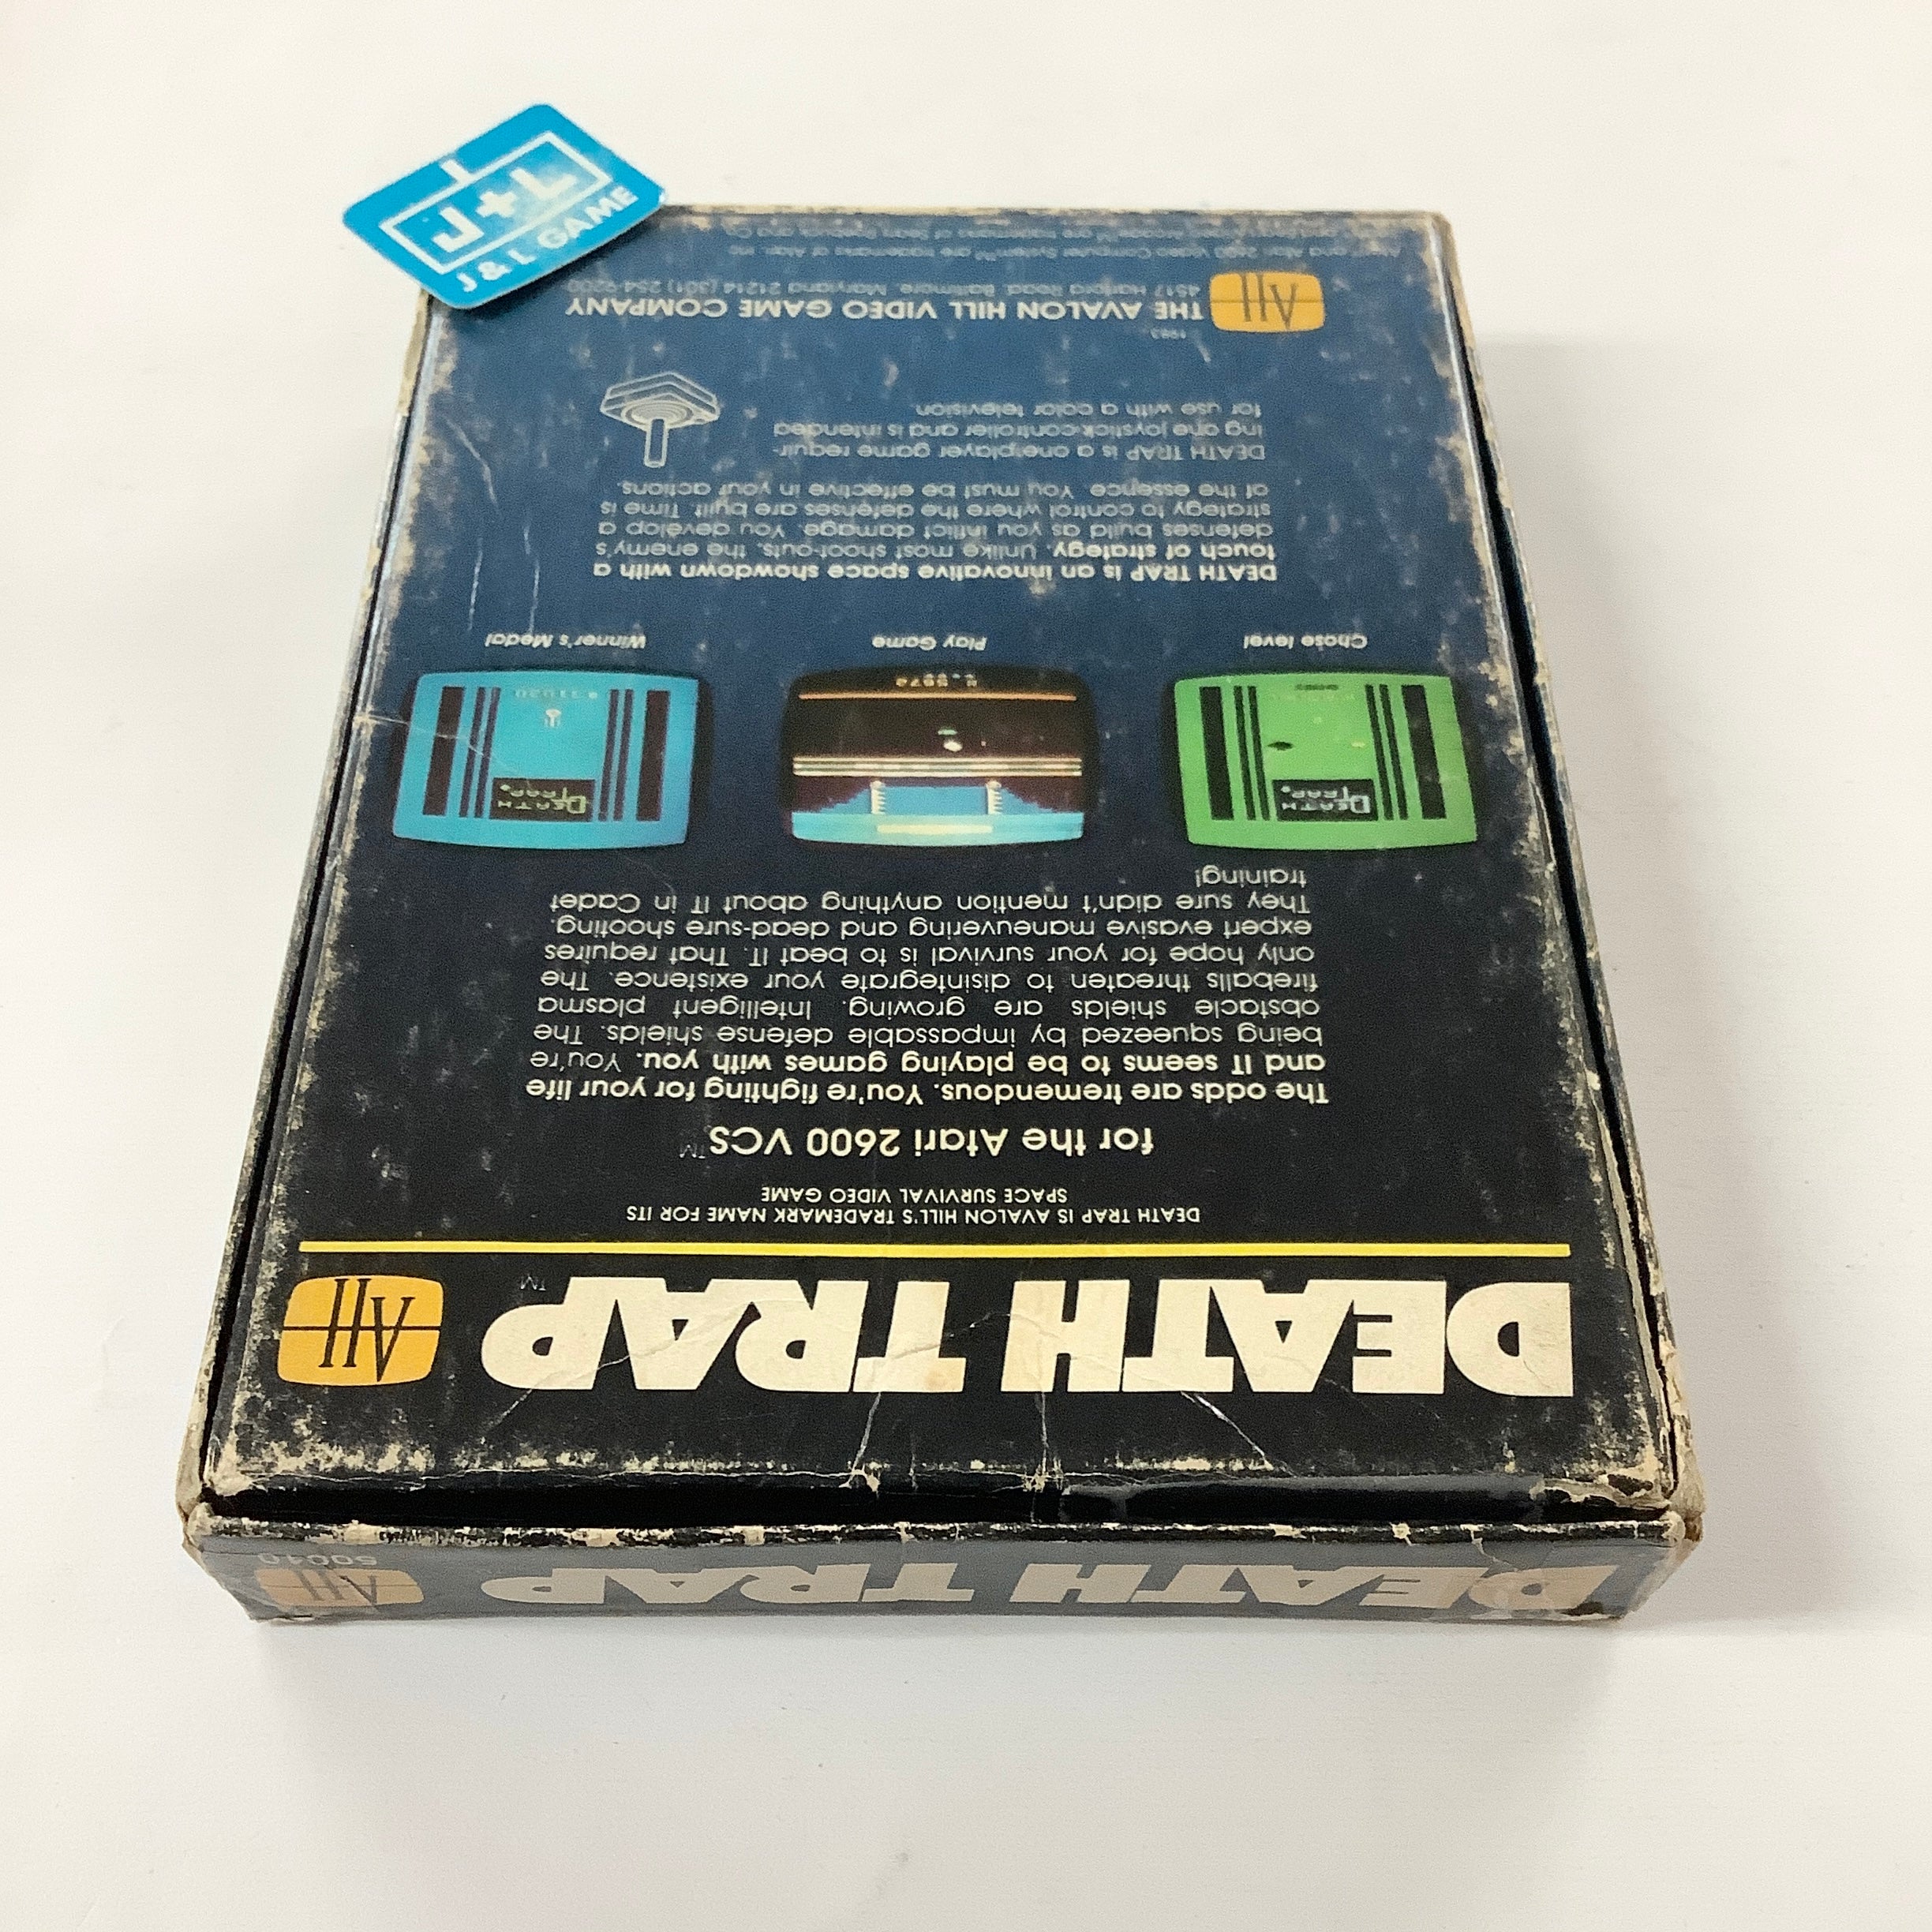 Death Trap - Atari 2600 [Pre-Owned] Video Games Atari   